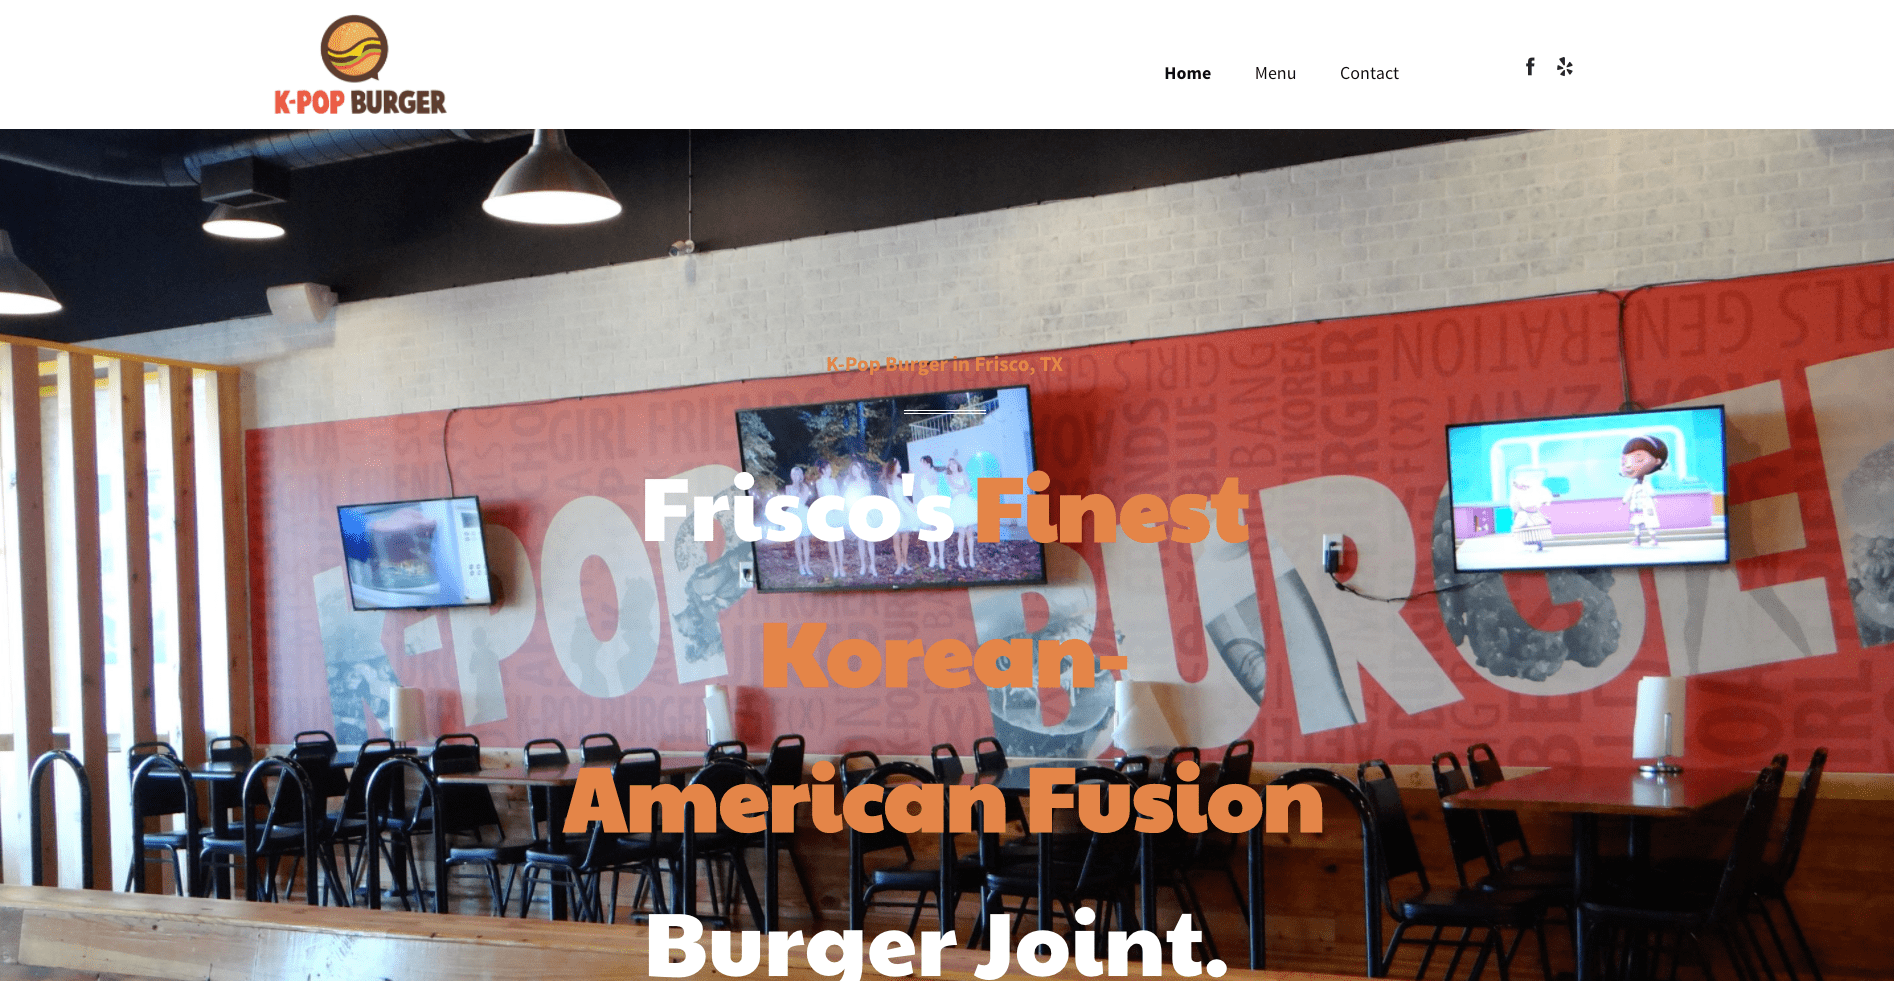 Web Design Experts at Osky Blue Build a New Website for K-Pop Burger